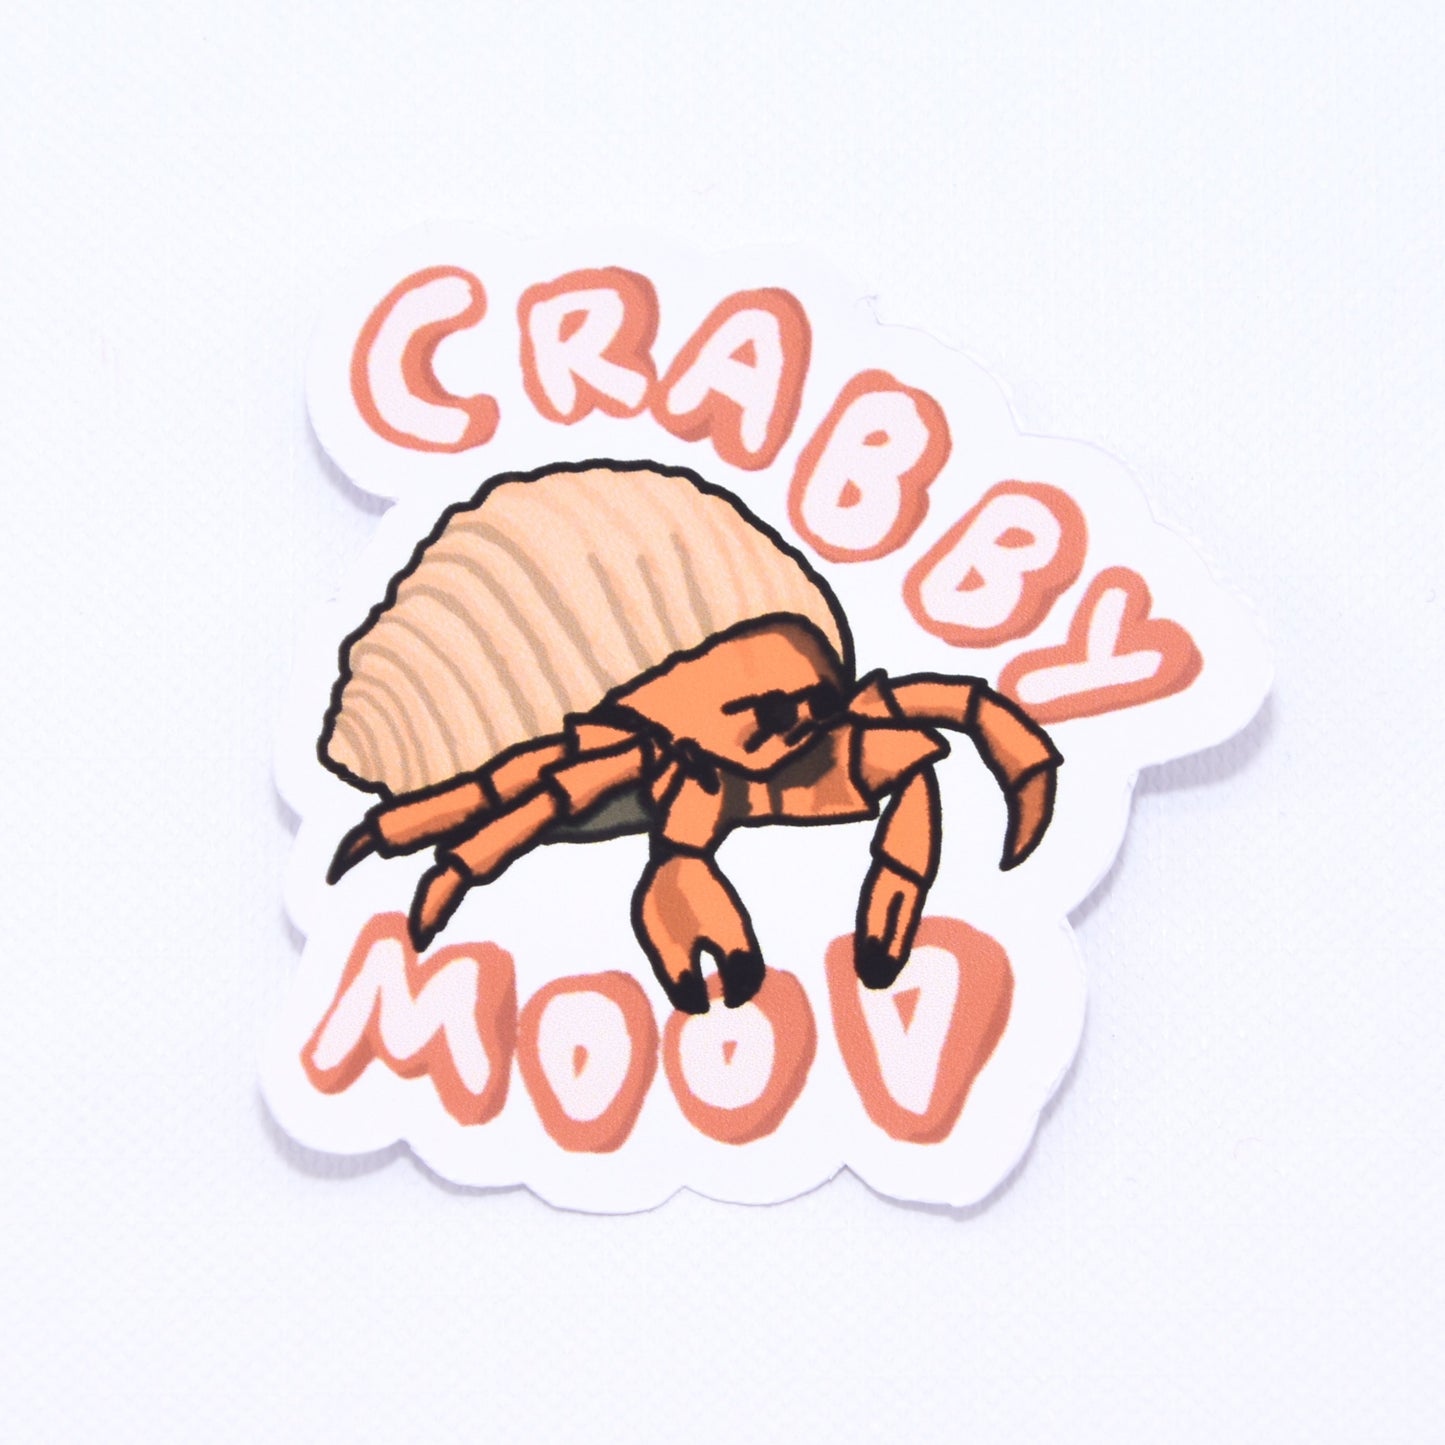 cute crabby mood hermit crab die cut sticker